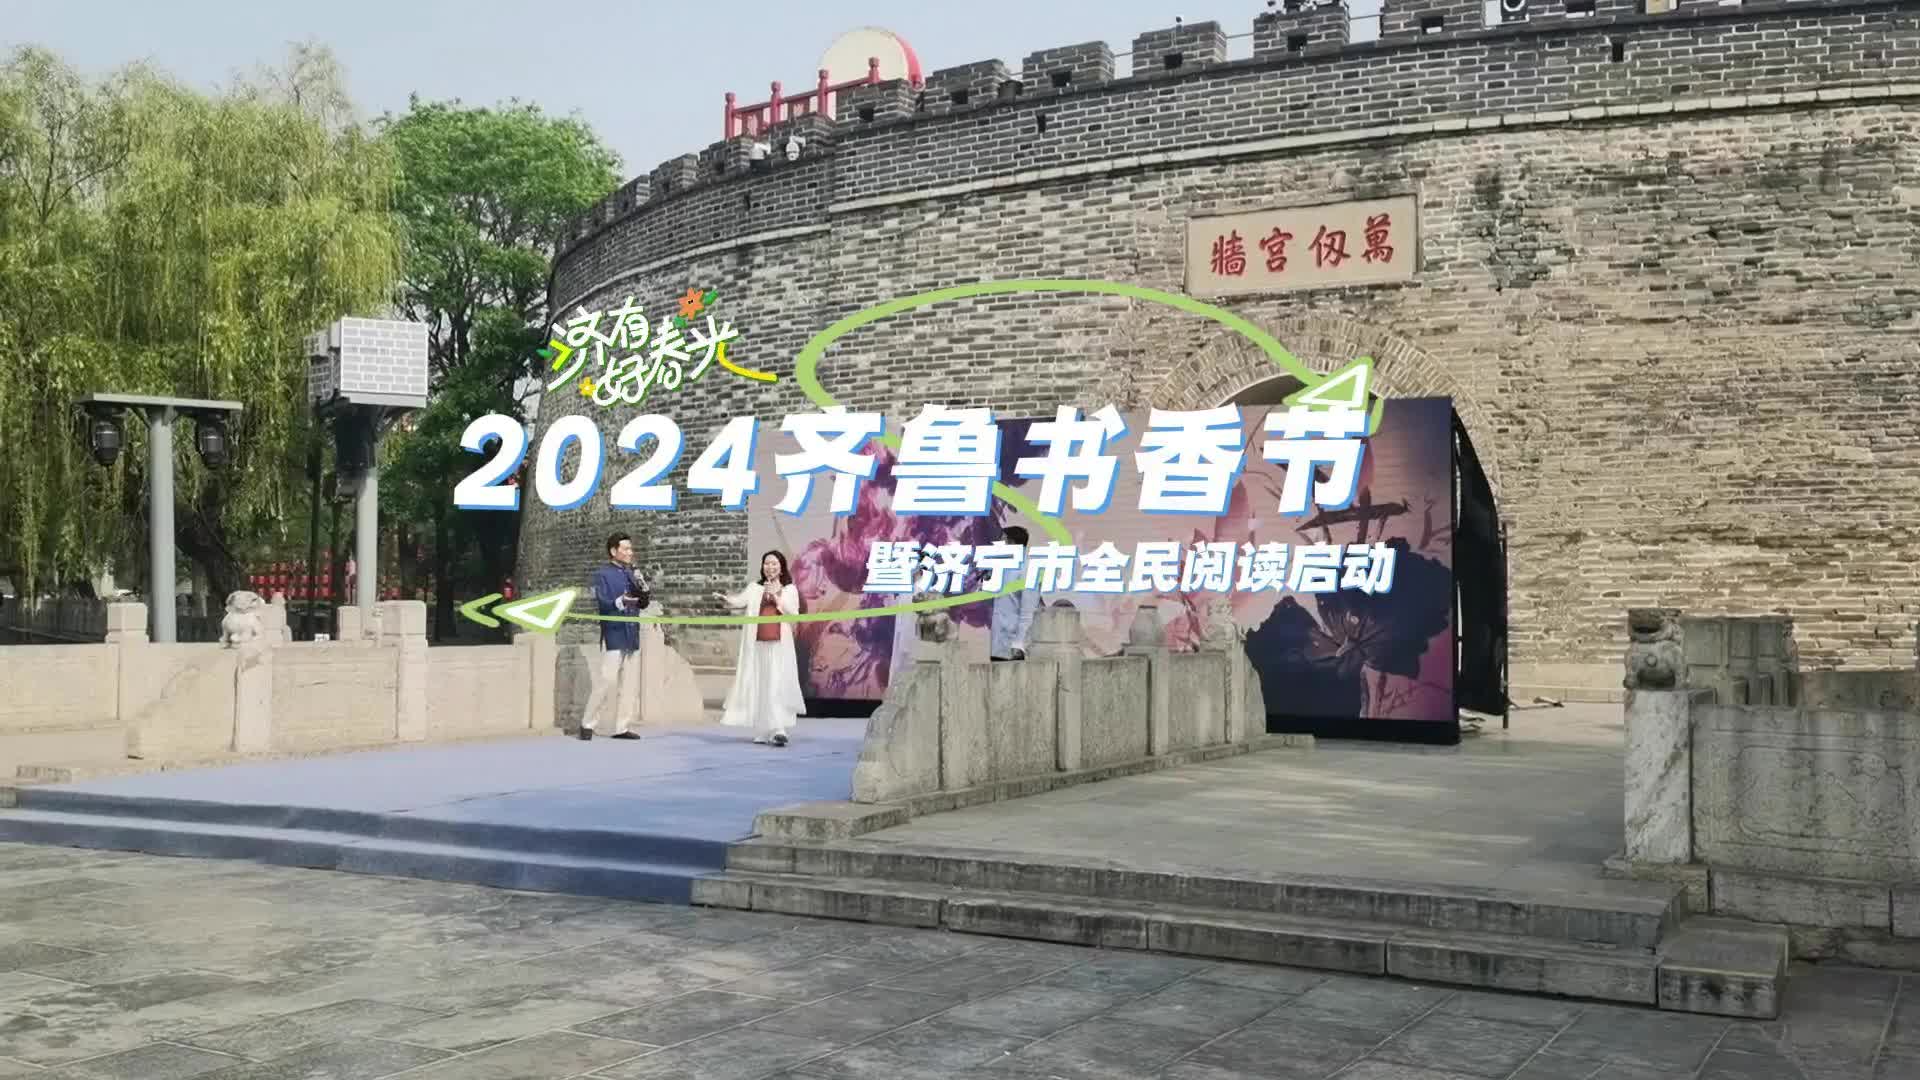 更济宁 | 2024齐鲁书香节暨济宁市全民阅读启动